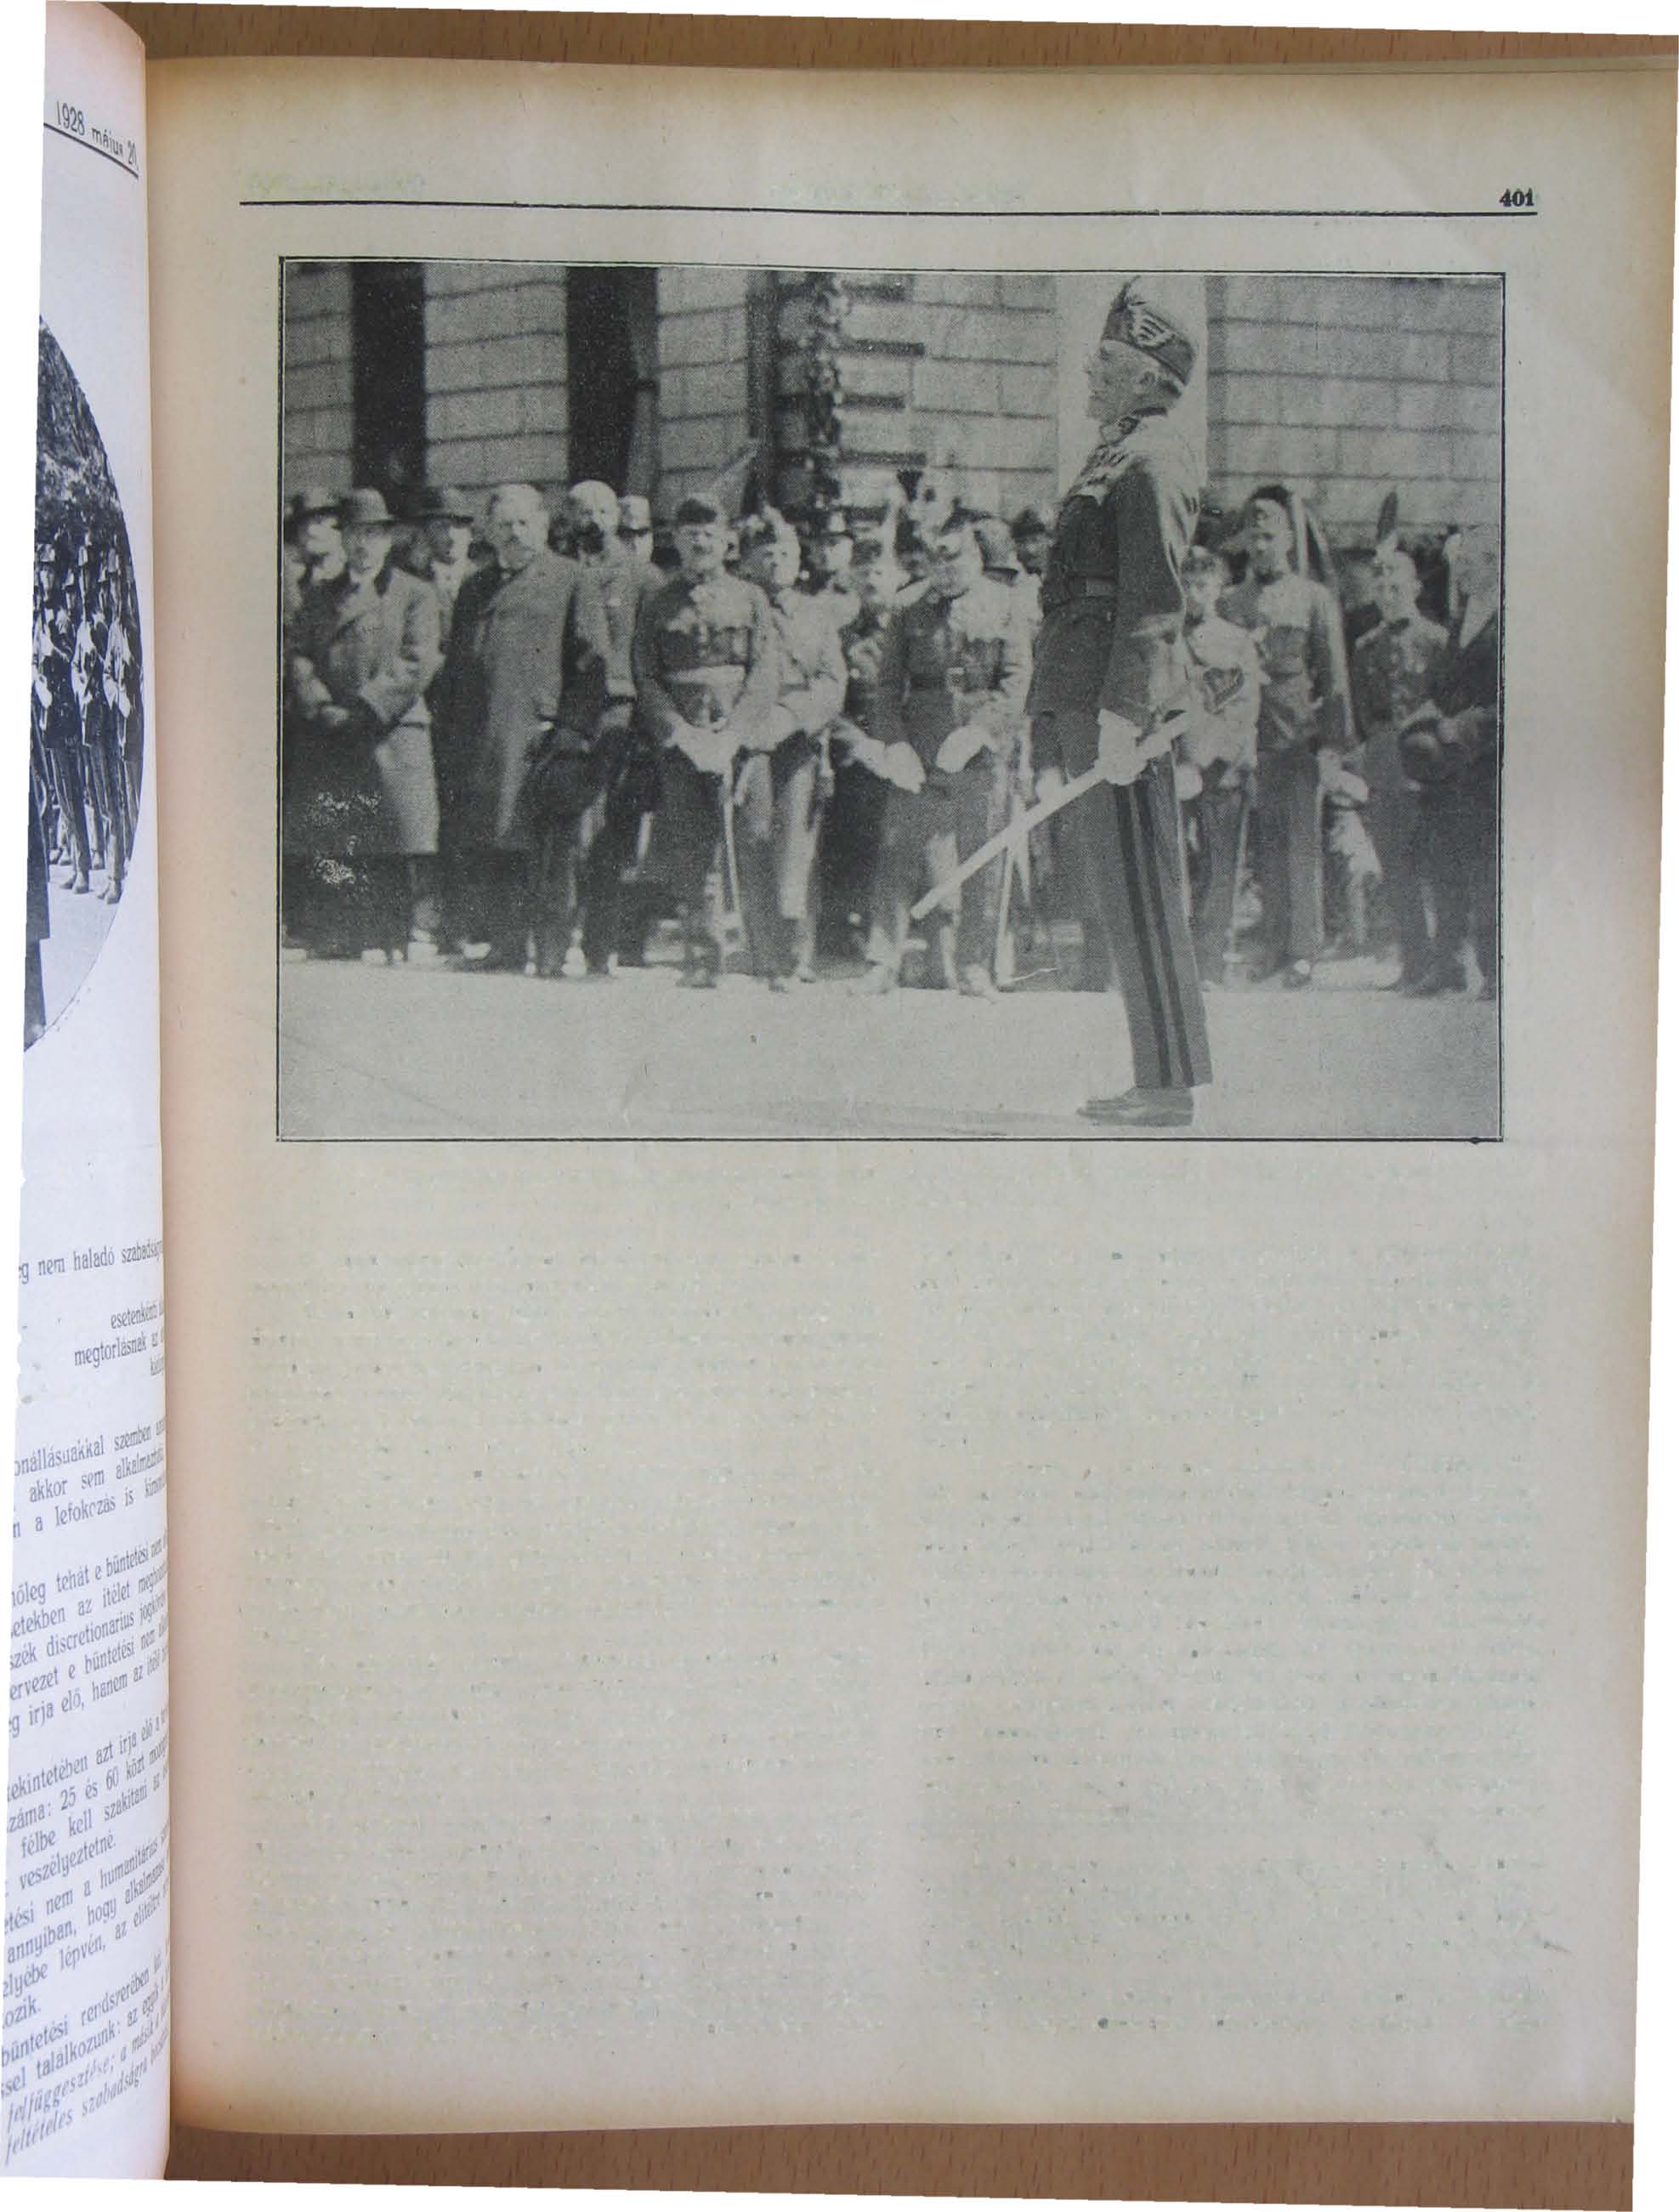 1928 május 20 CSENDöRSEGI LAPOK Képek a csendóroértanuk emlékművének leleplezéséról : S zá h le n d er Béla altábornagy a m kir csendórség felügyelóje ünnepi beszédét mondja Az igazságszolgáltatás